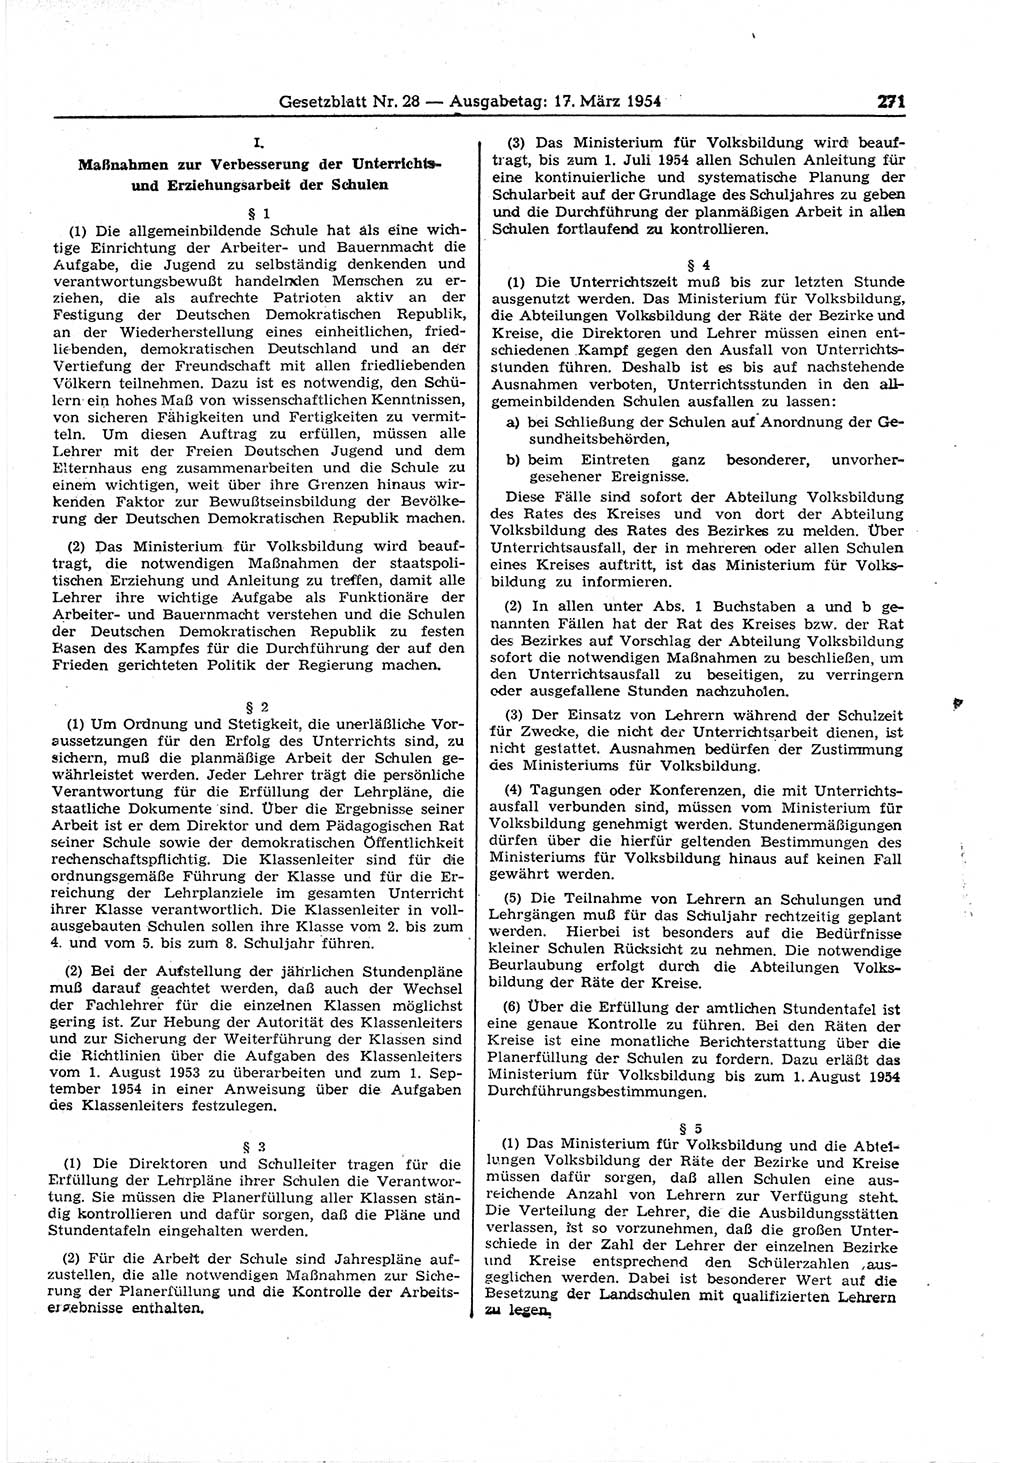 Gesetzblatt (GBl.) der Deutschen Demokratischen Republik (DDR) 1954, Seite 271 (GBl. DDR 1954, S. 271)